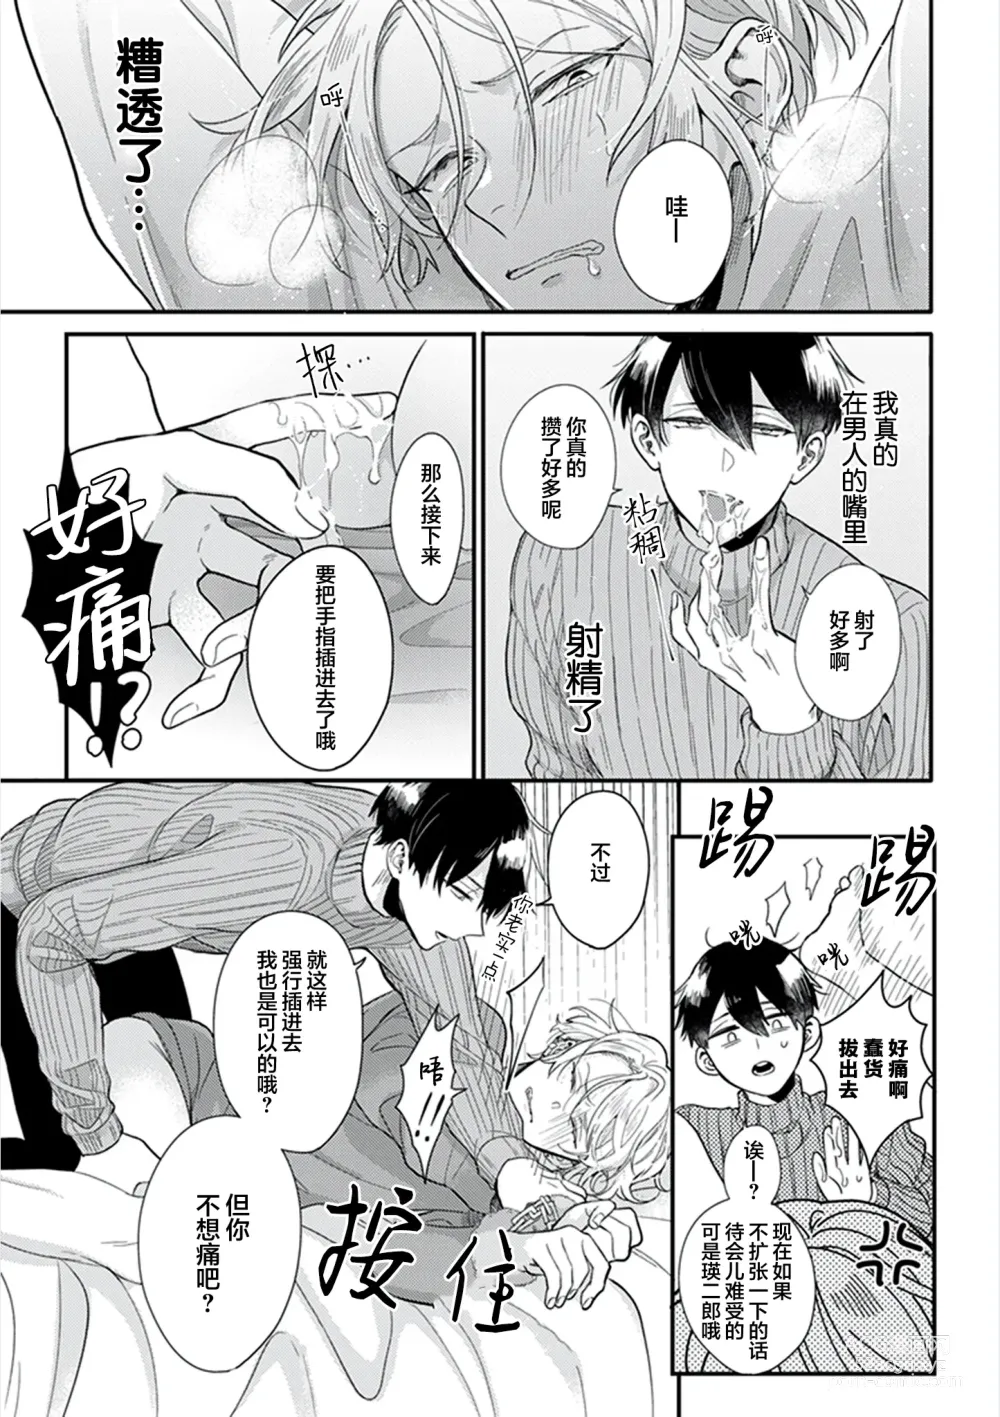 Page 31 of manga 爸爸修行中的二把手被糟糕的男人盯上了